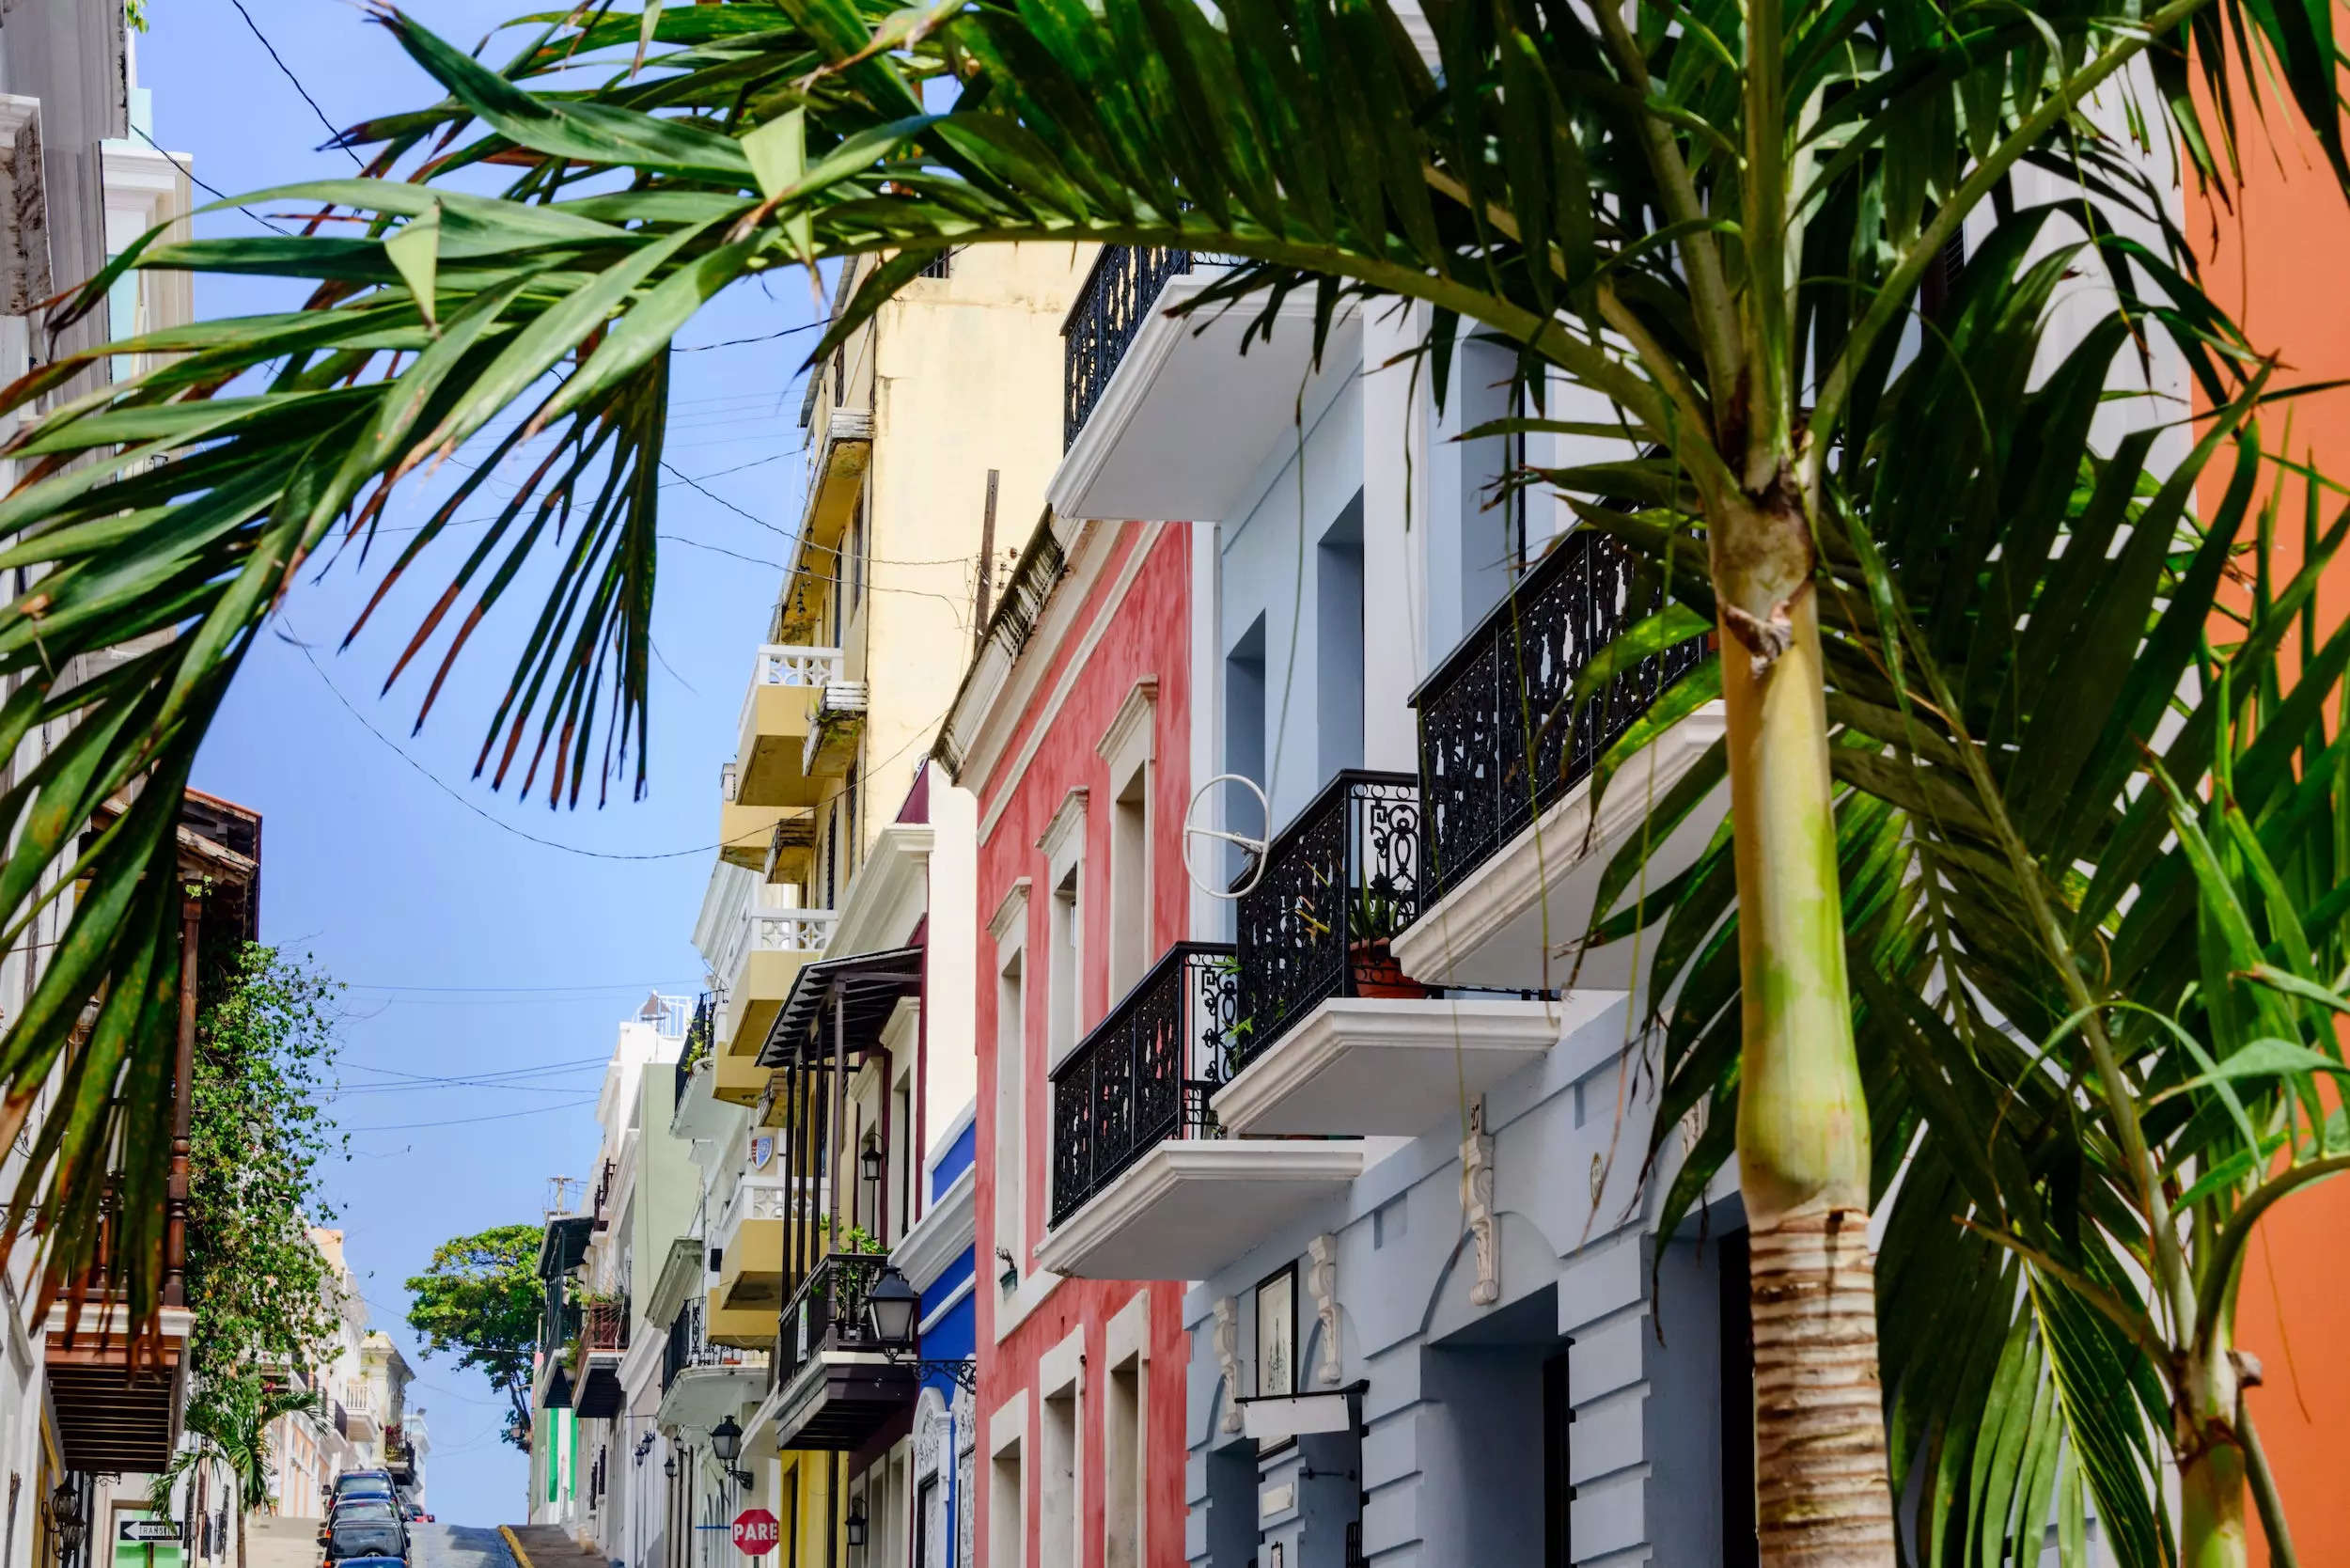 Houses in Old San Juan, Puerto Rico.